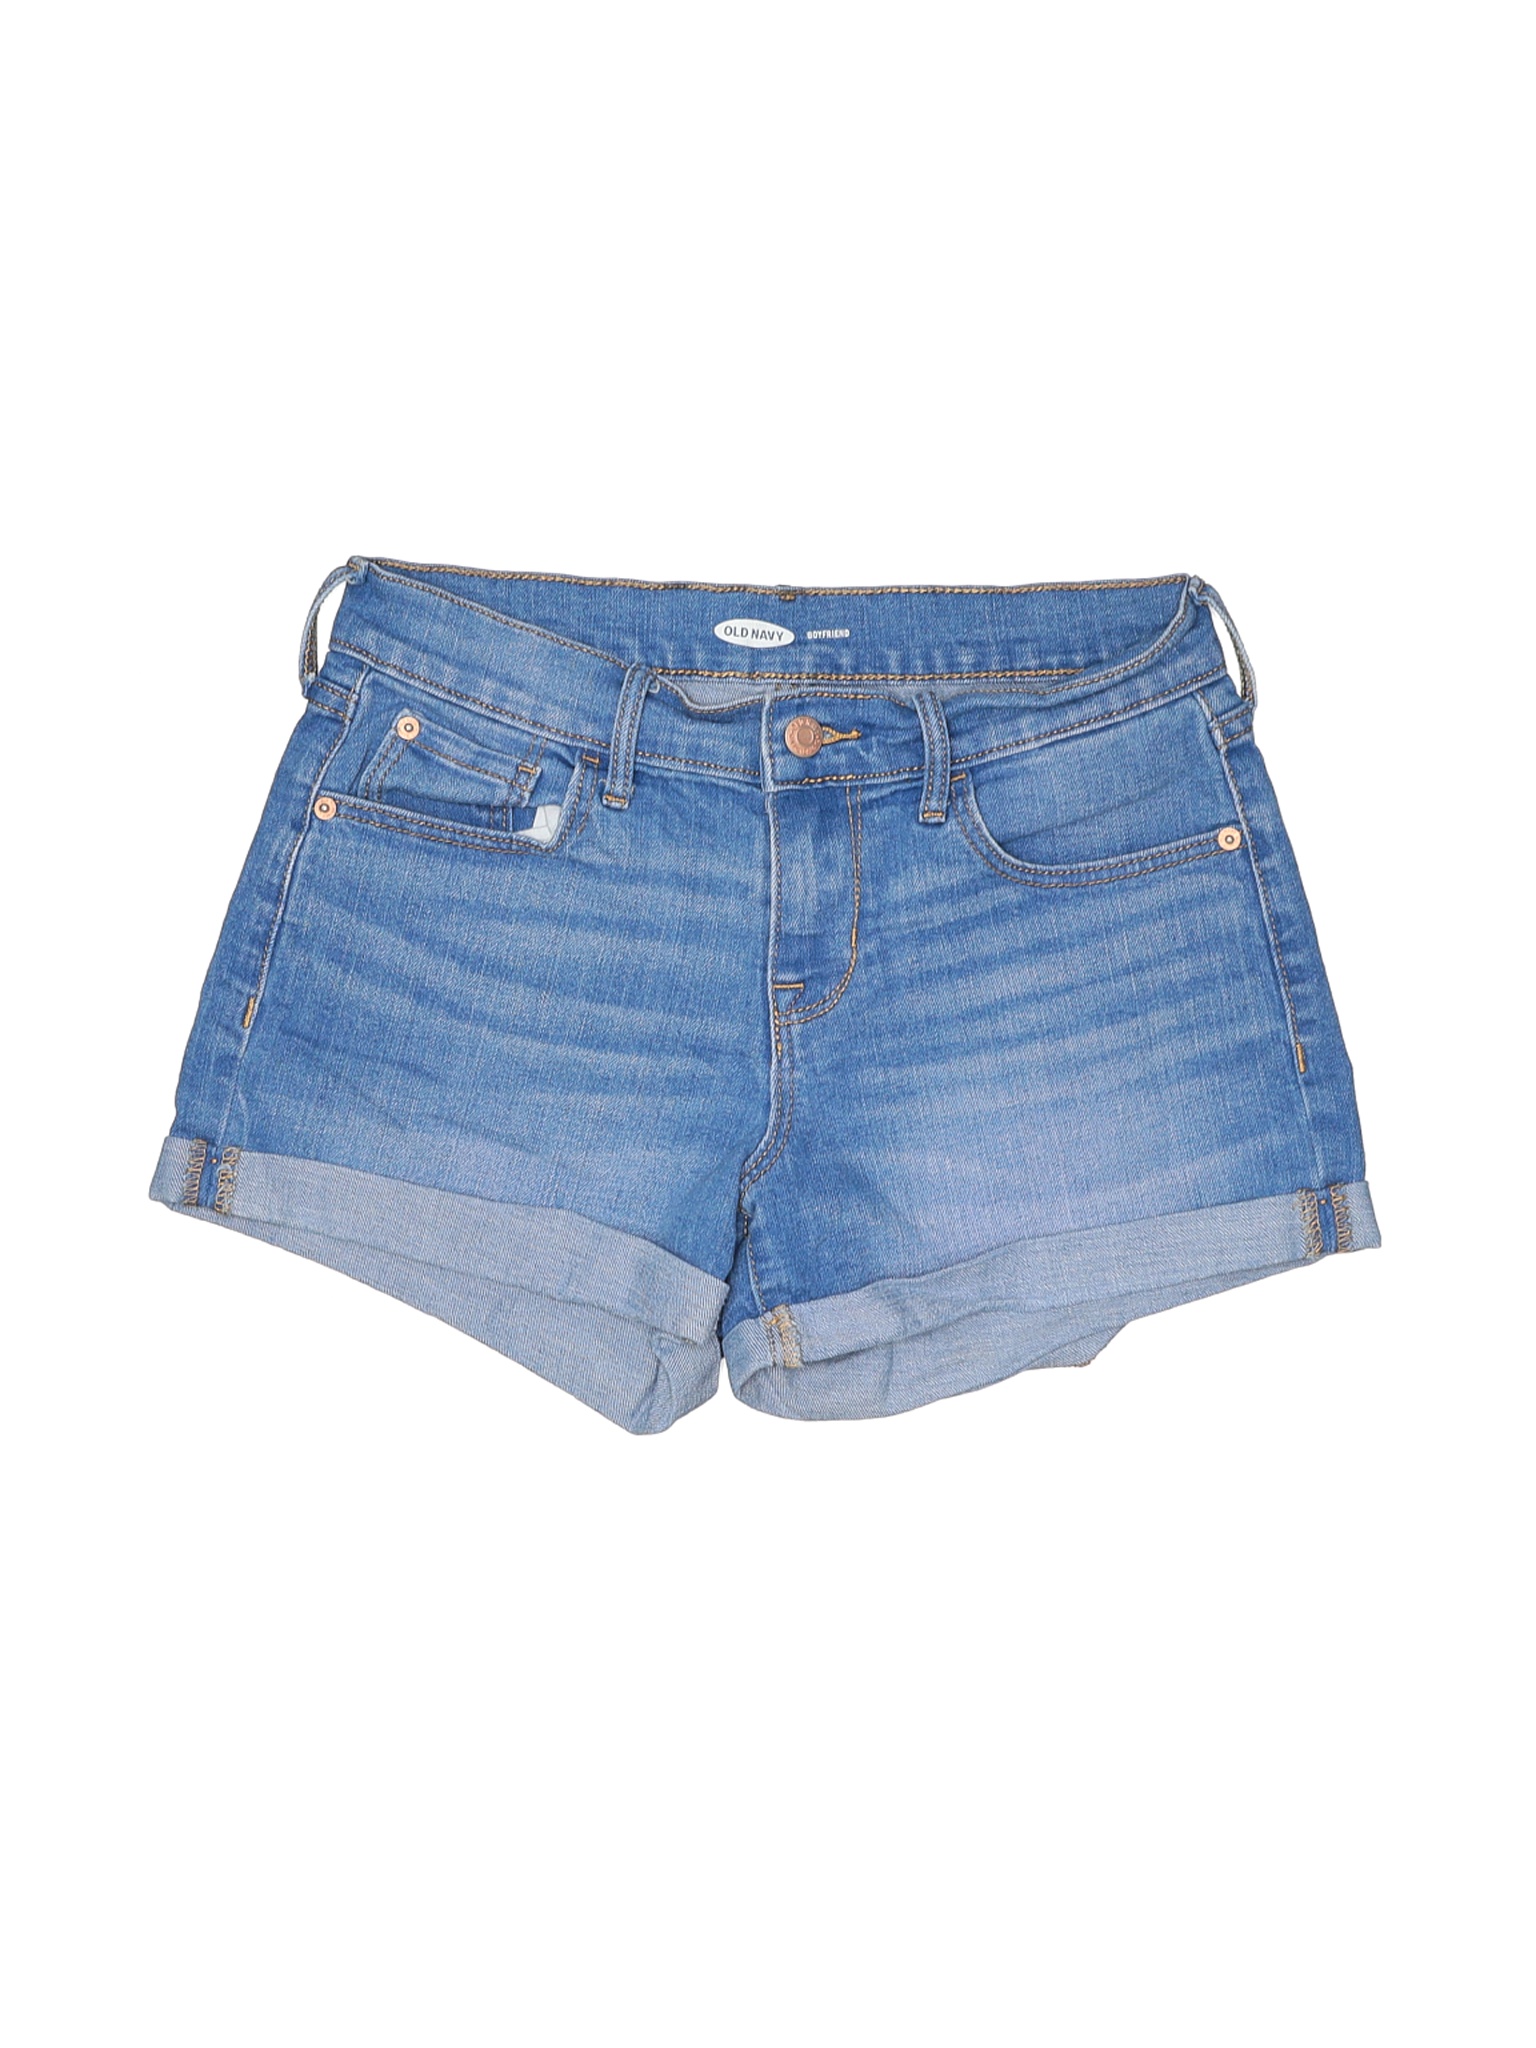 Old Navy Women Blue Denim Shorts 0 | eBay